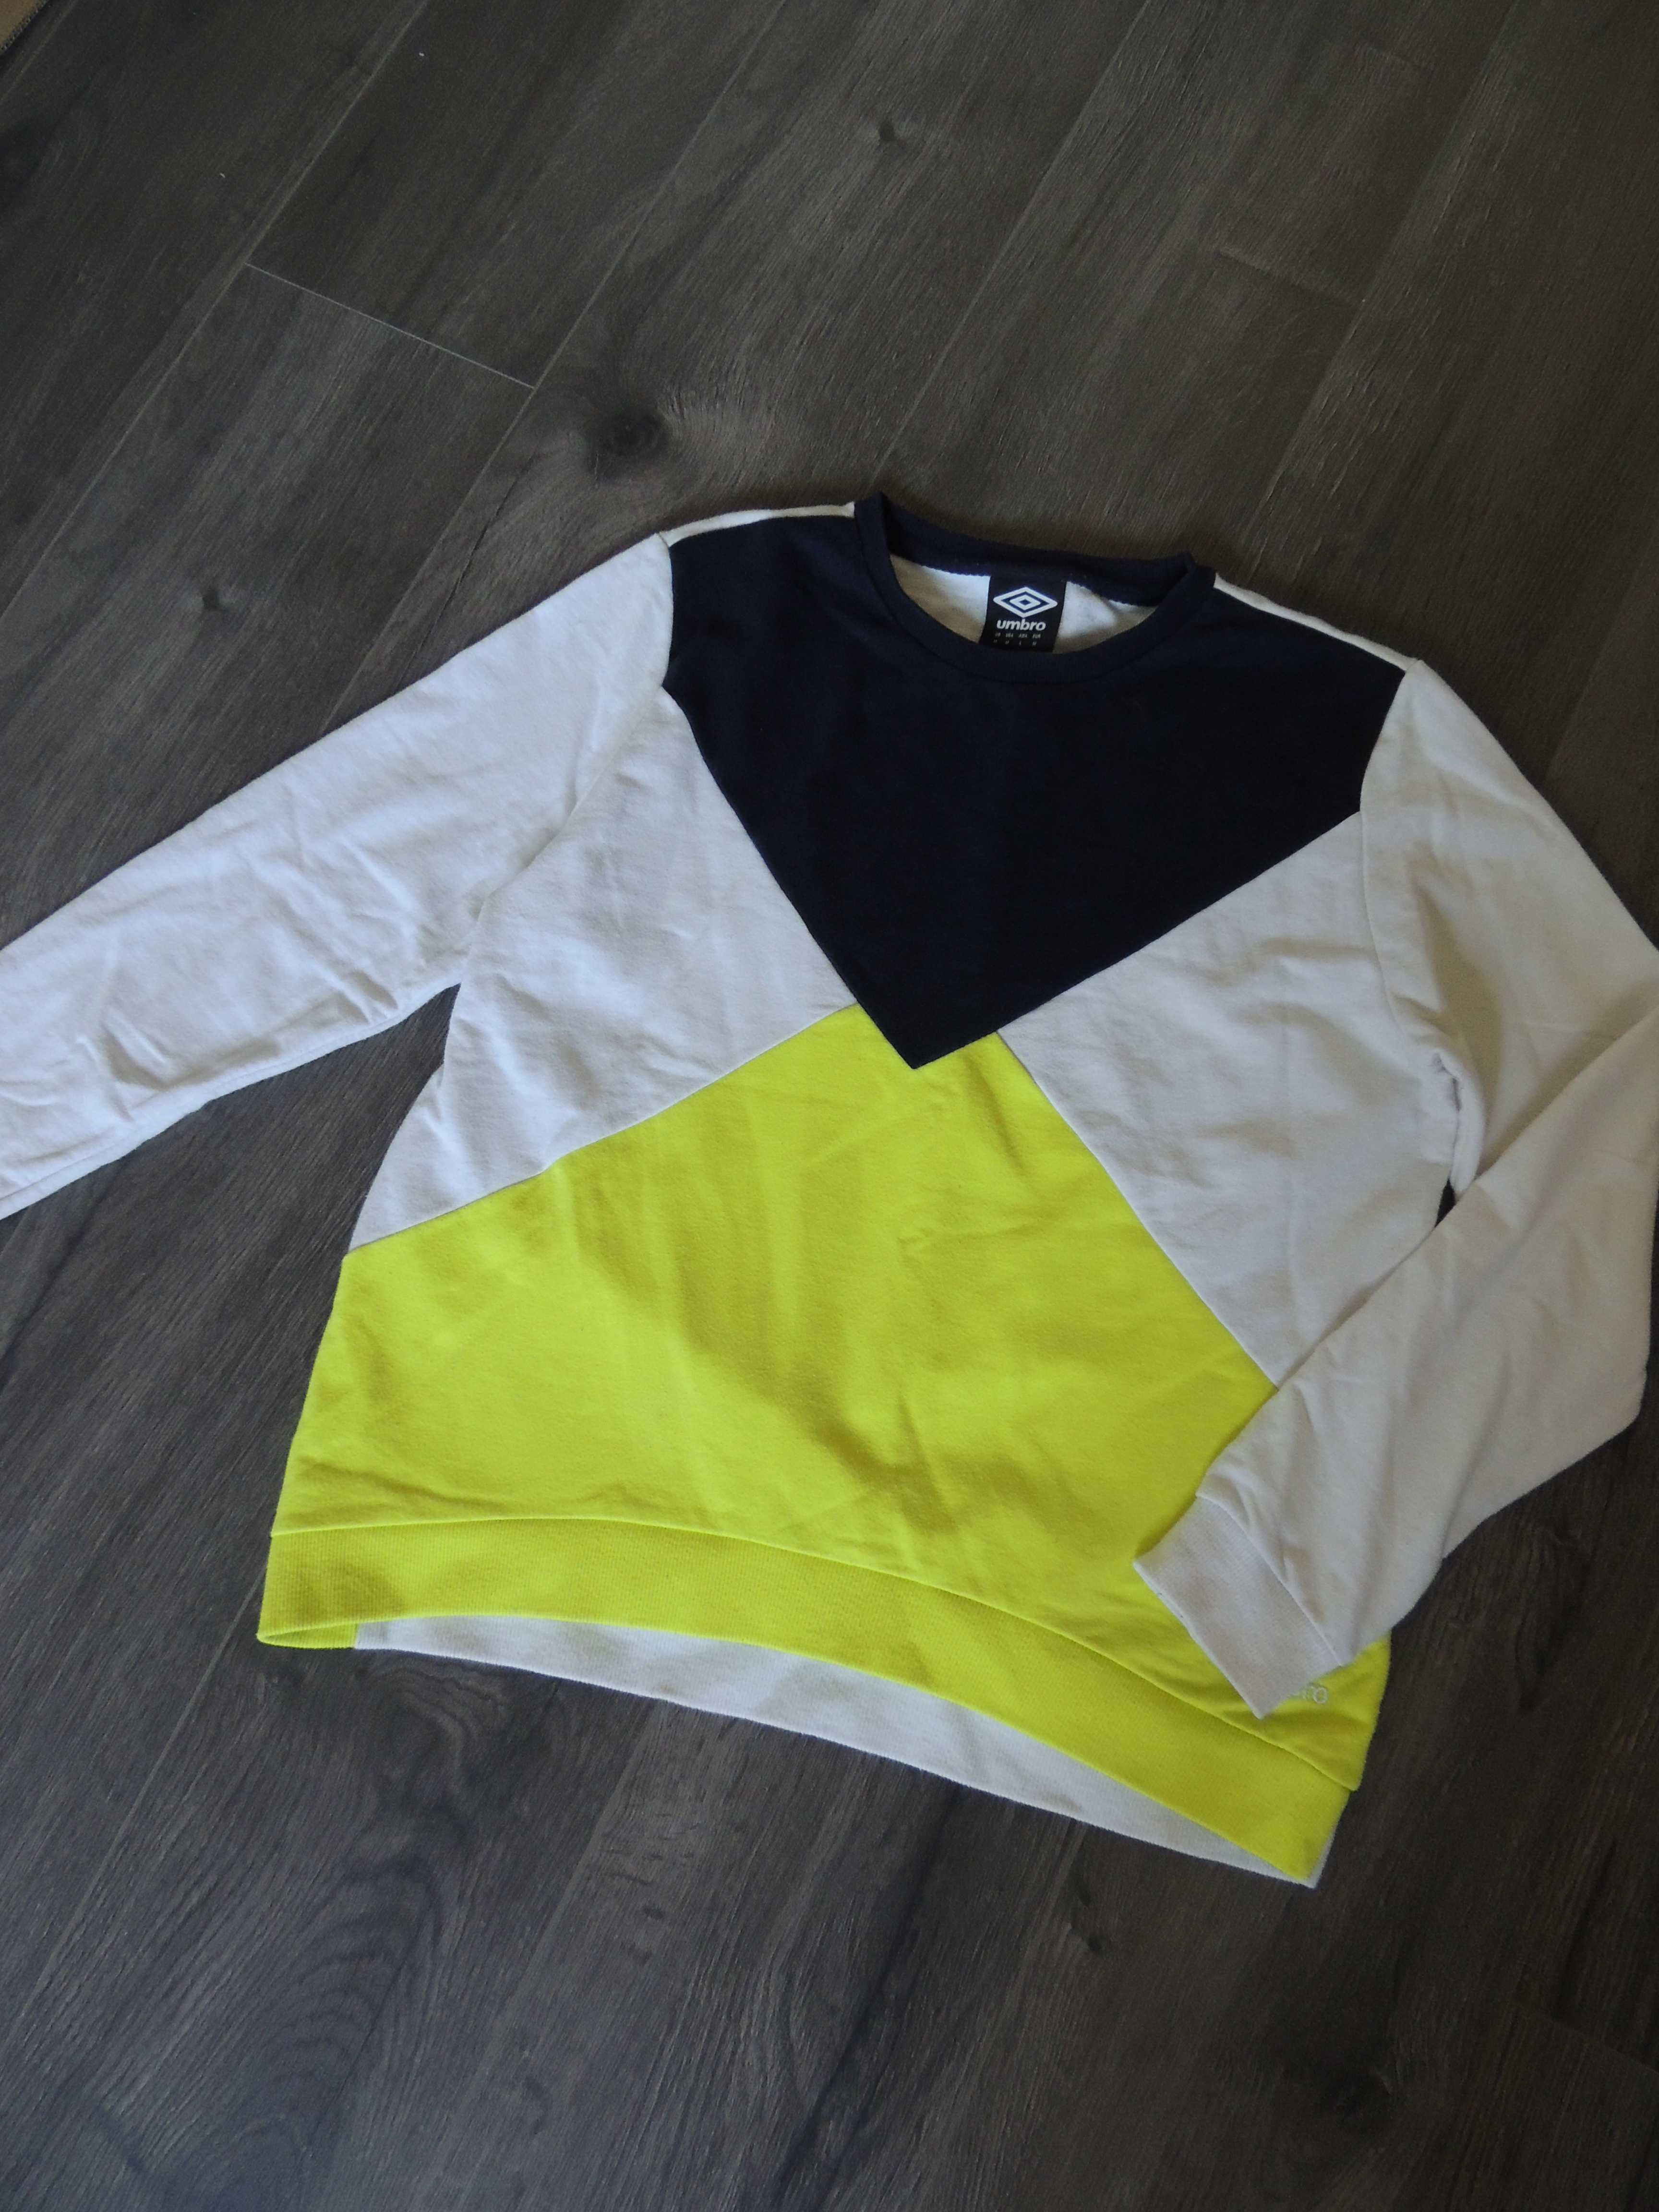 biała czarna żółta neonowa bluza umbro damska unisex M